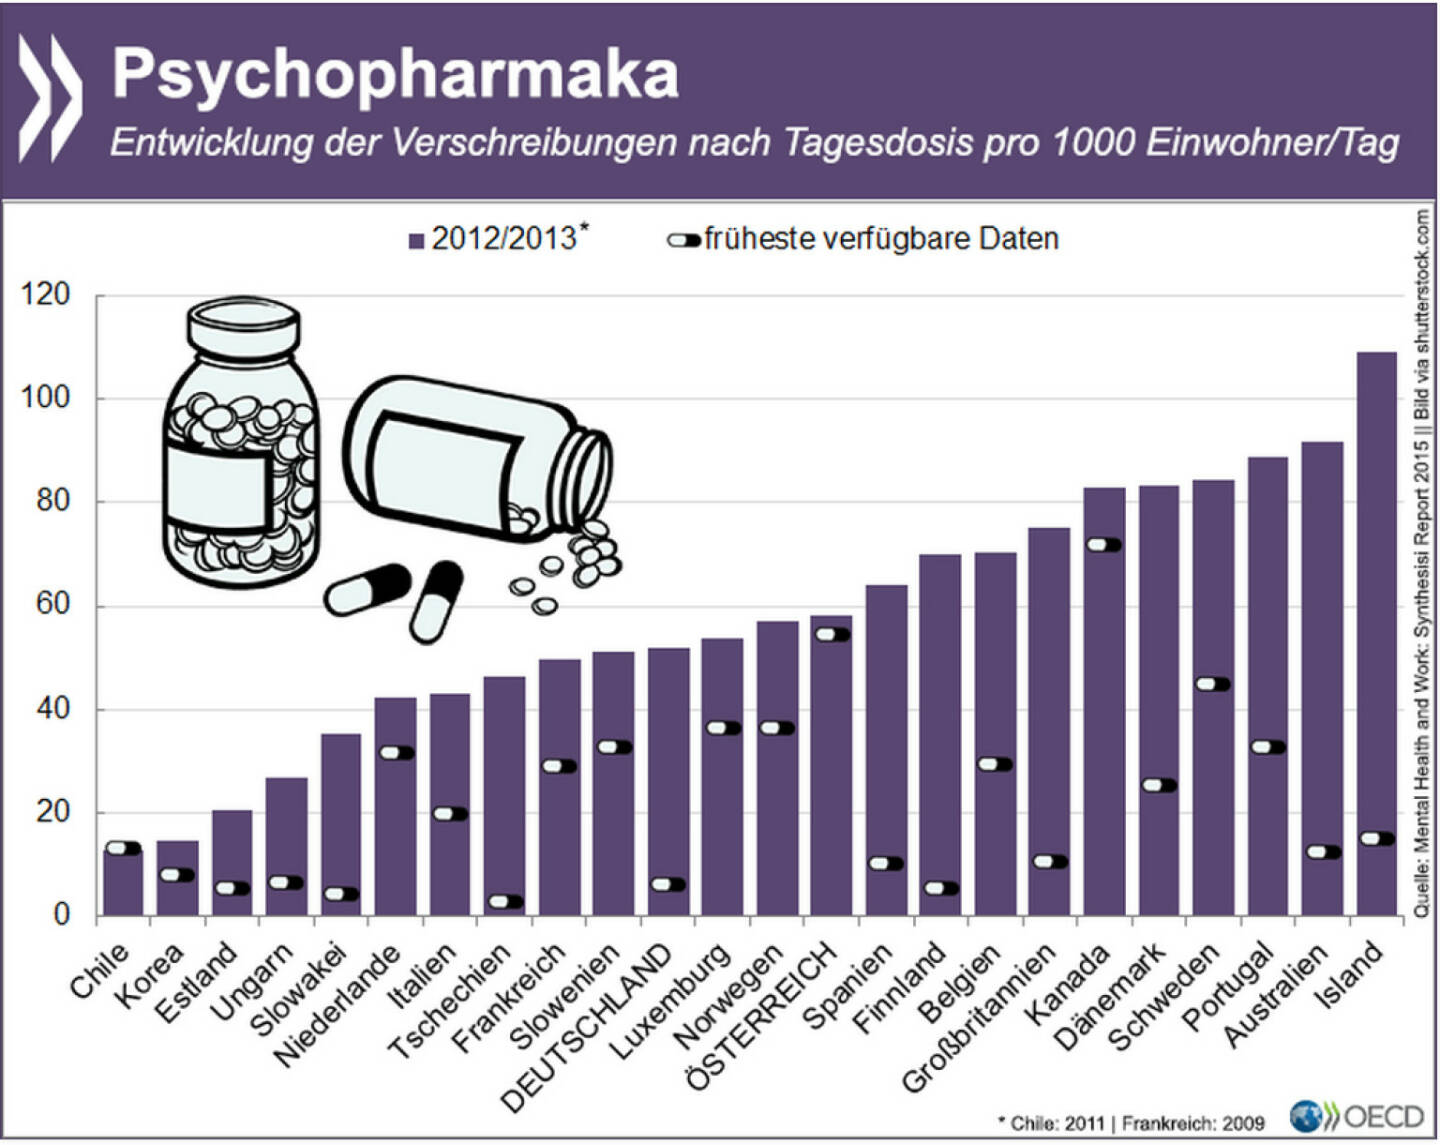 Happy Pills? In den vergangen zwei Jahrzehnten sind die Verschreibungen für Psychopharmaka in den meisten OECD-Ländern massiv nach oben gegangen. Oft sind Antidepressiva und Co. die bevorzugten Behandlungsmethoden bei psychischen Problemen.
Welche Auswirkungen psychische Erkrankungen auf den Einzelnen und die Gesellschaft haben, erläutert eine heute erschienene Studie: http://bit.ly/1AHnGrB (S.71ff)